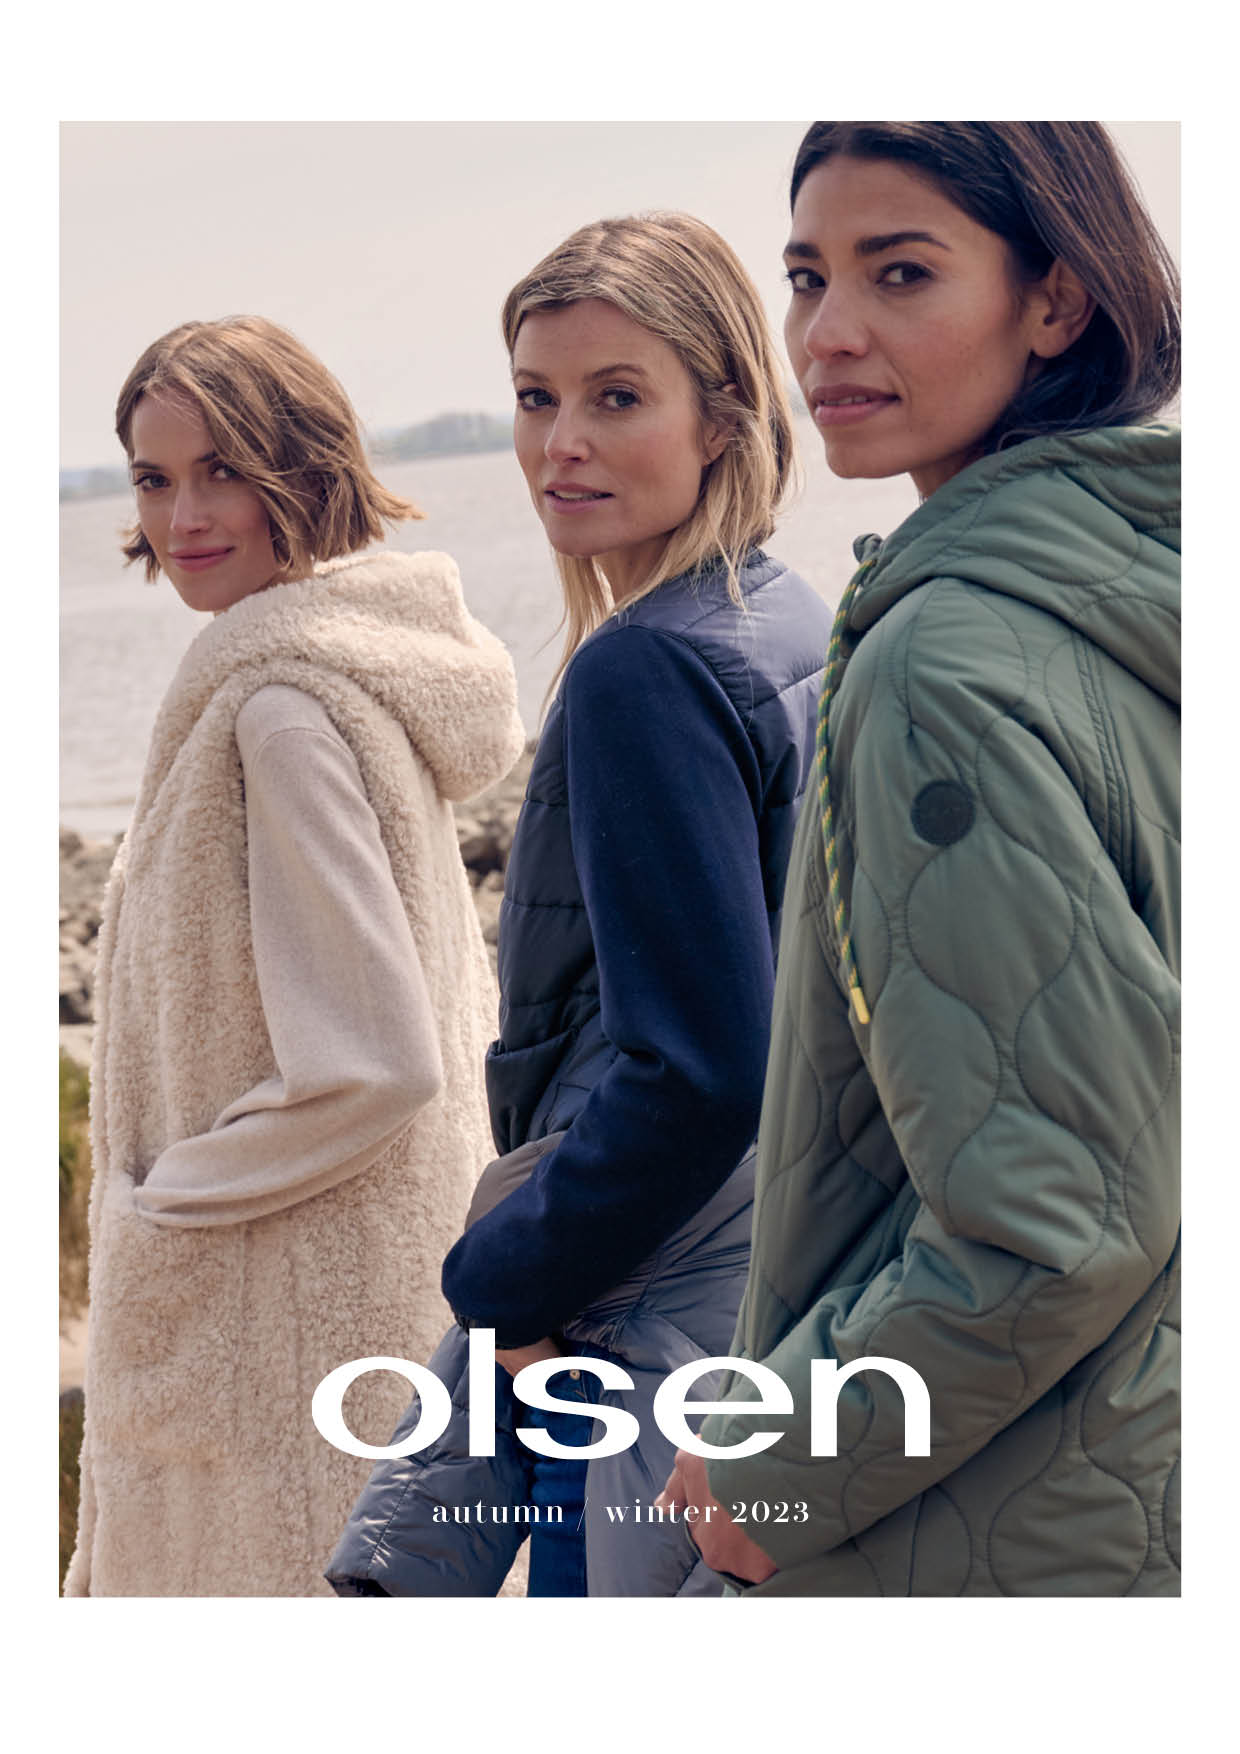 Fashion & Lifestyle Brand Olsen Fashion